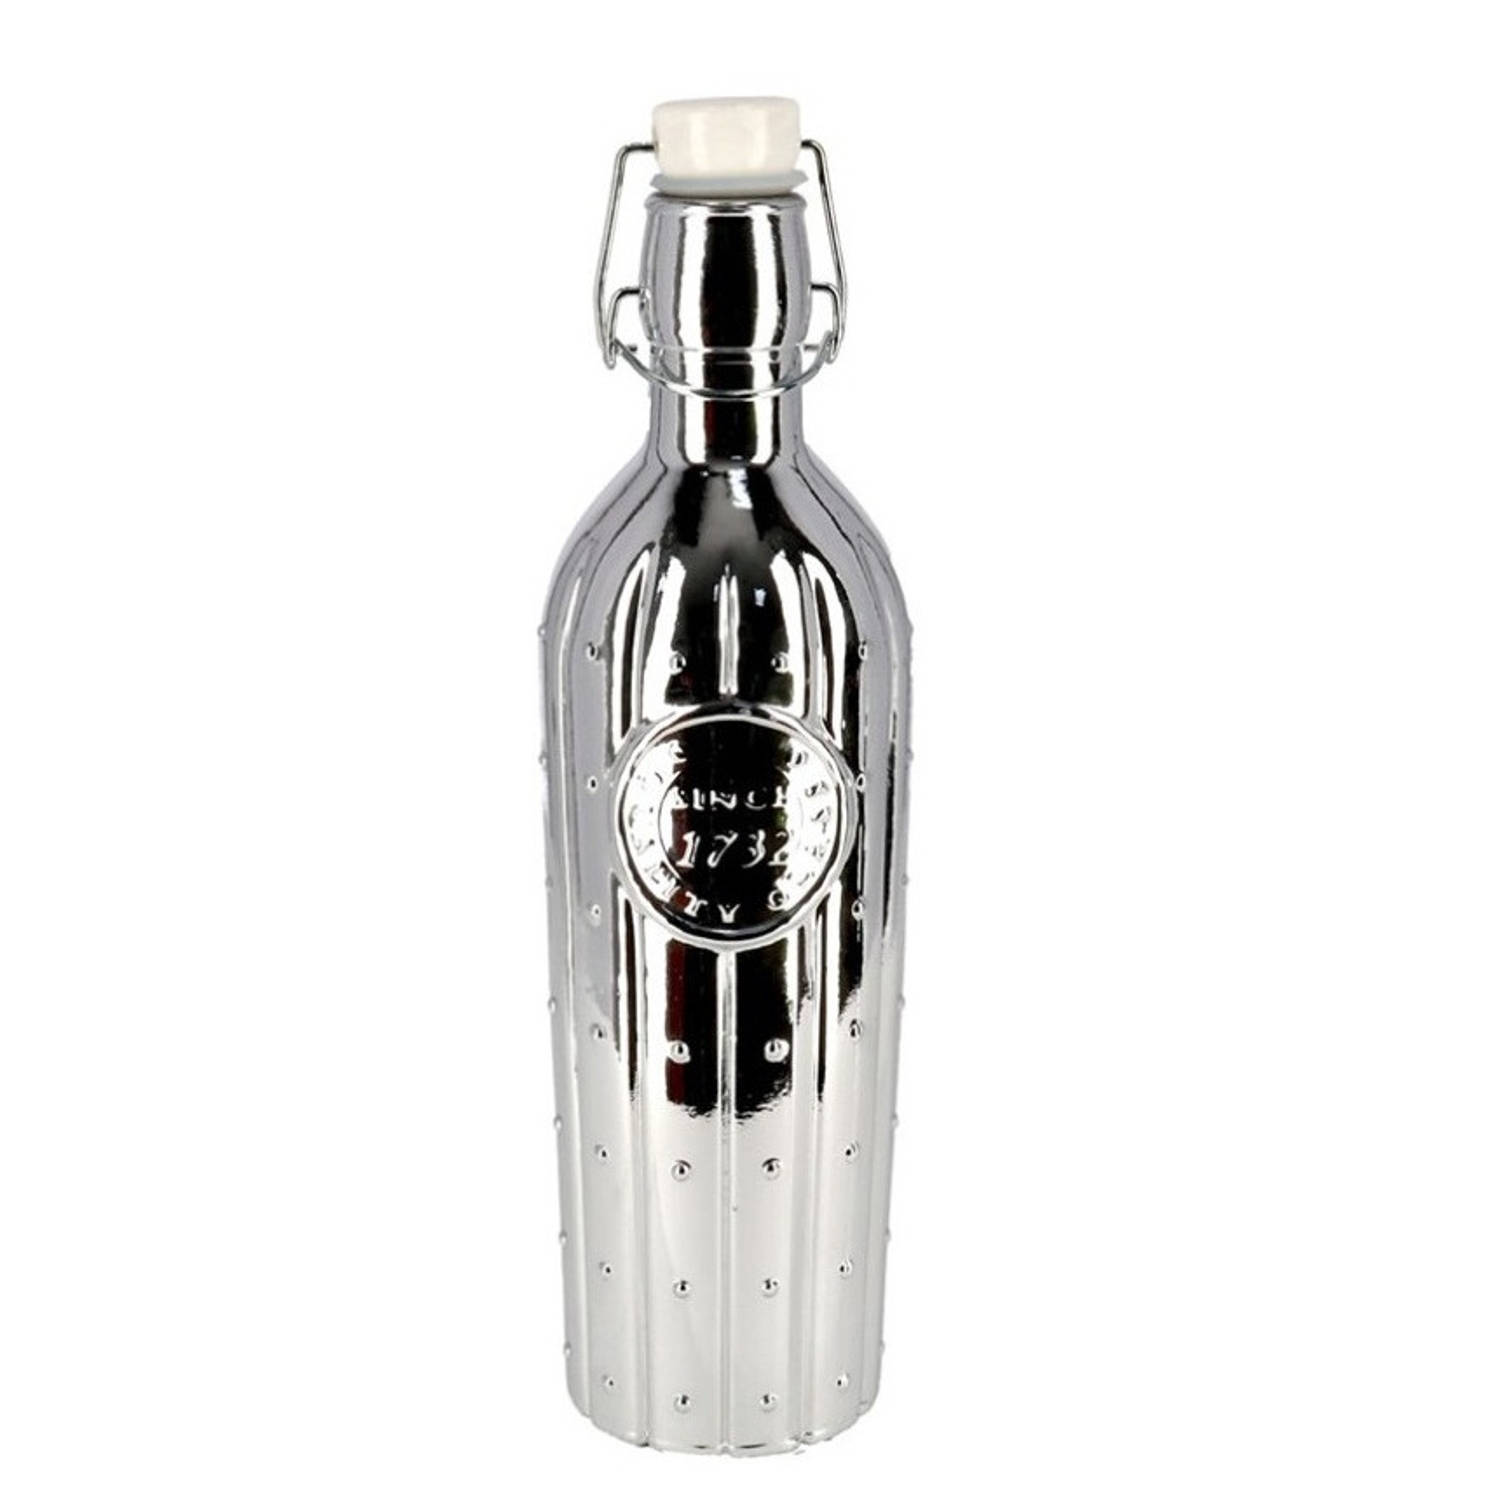 1x Glazen decoratie flessen zilver met beugeldop 1 liter - Decoratieve flessen